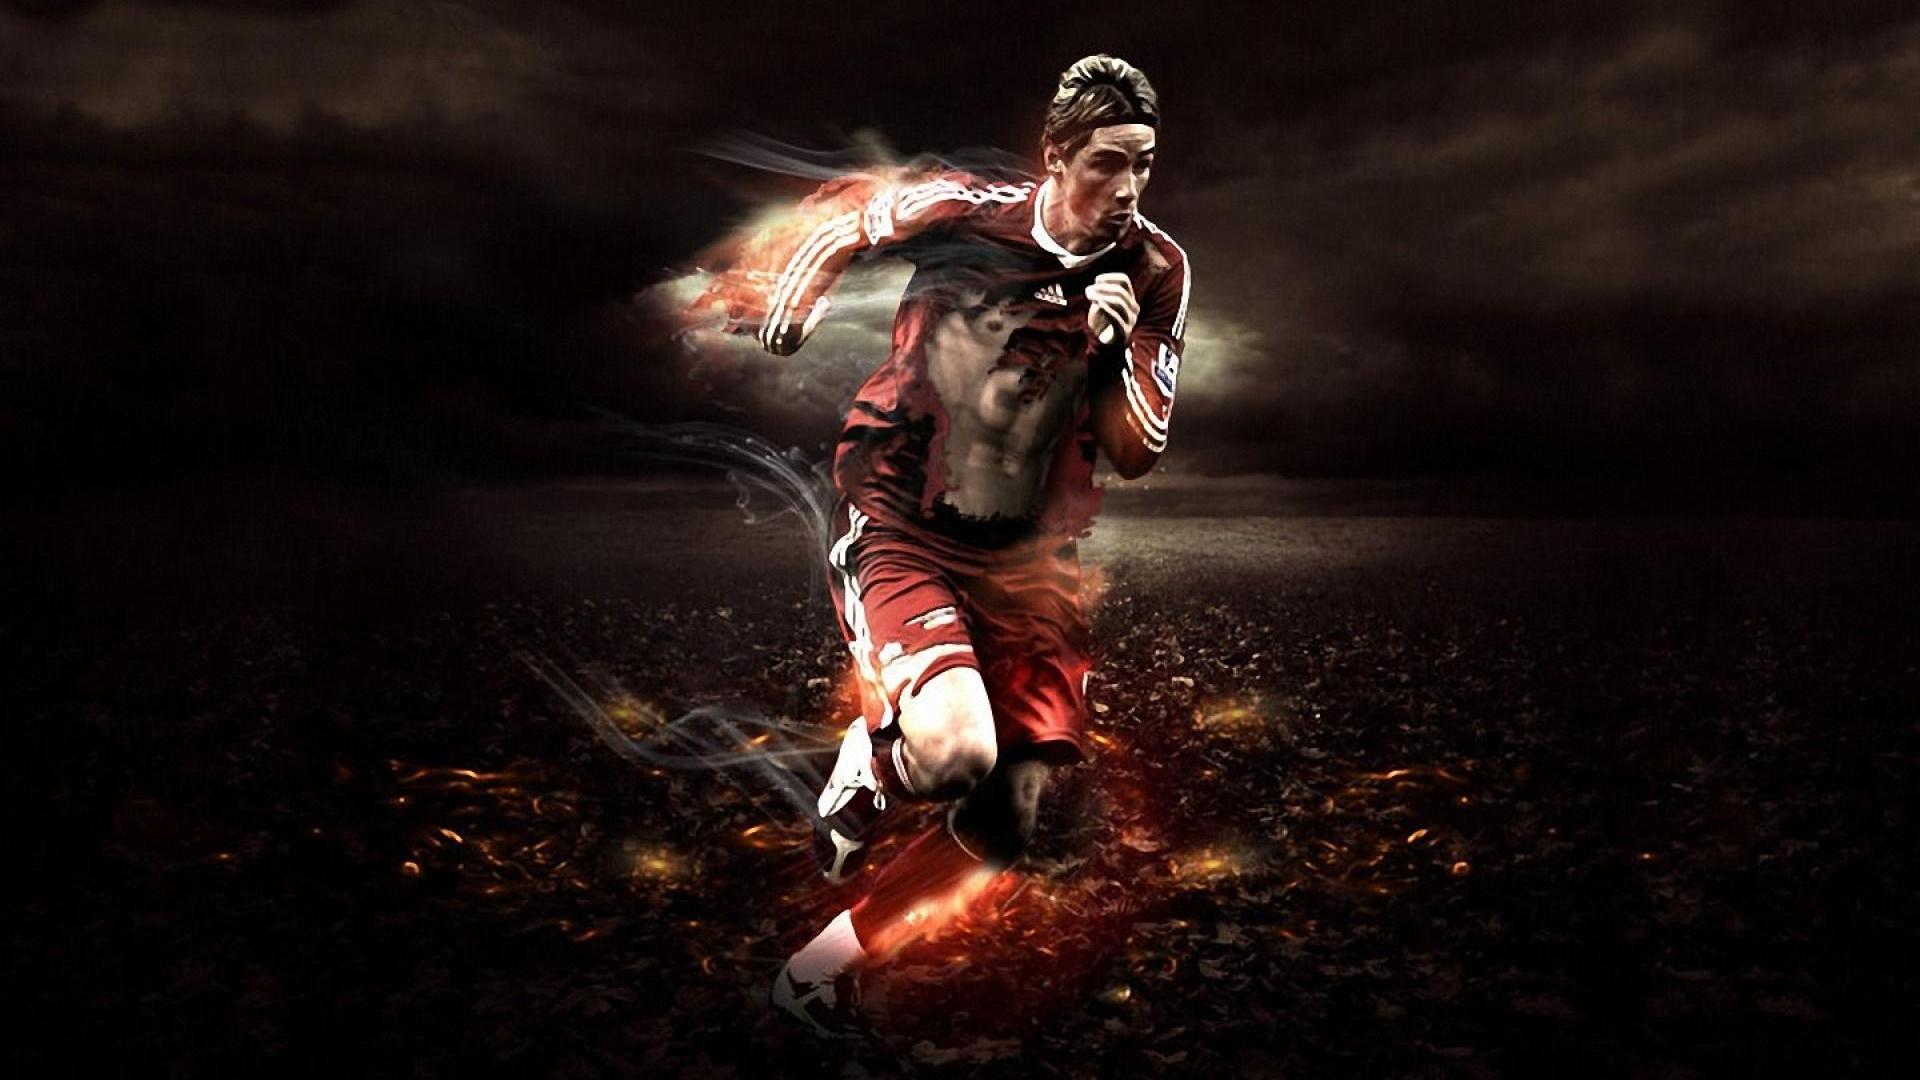 fondos de pantalla de jugador de fútbol,jugador de fútbol,fotografía,fotografía con flash,oscuridad,diseño gráfico